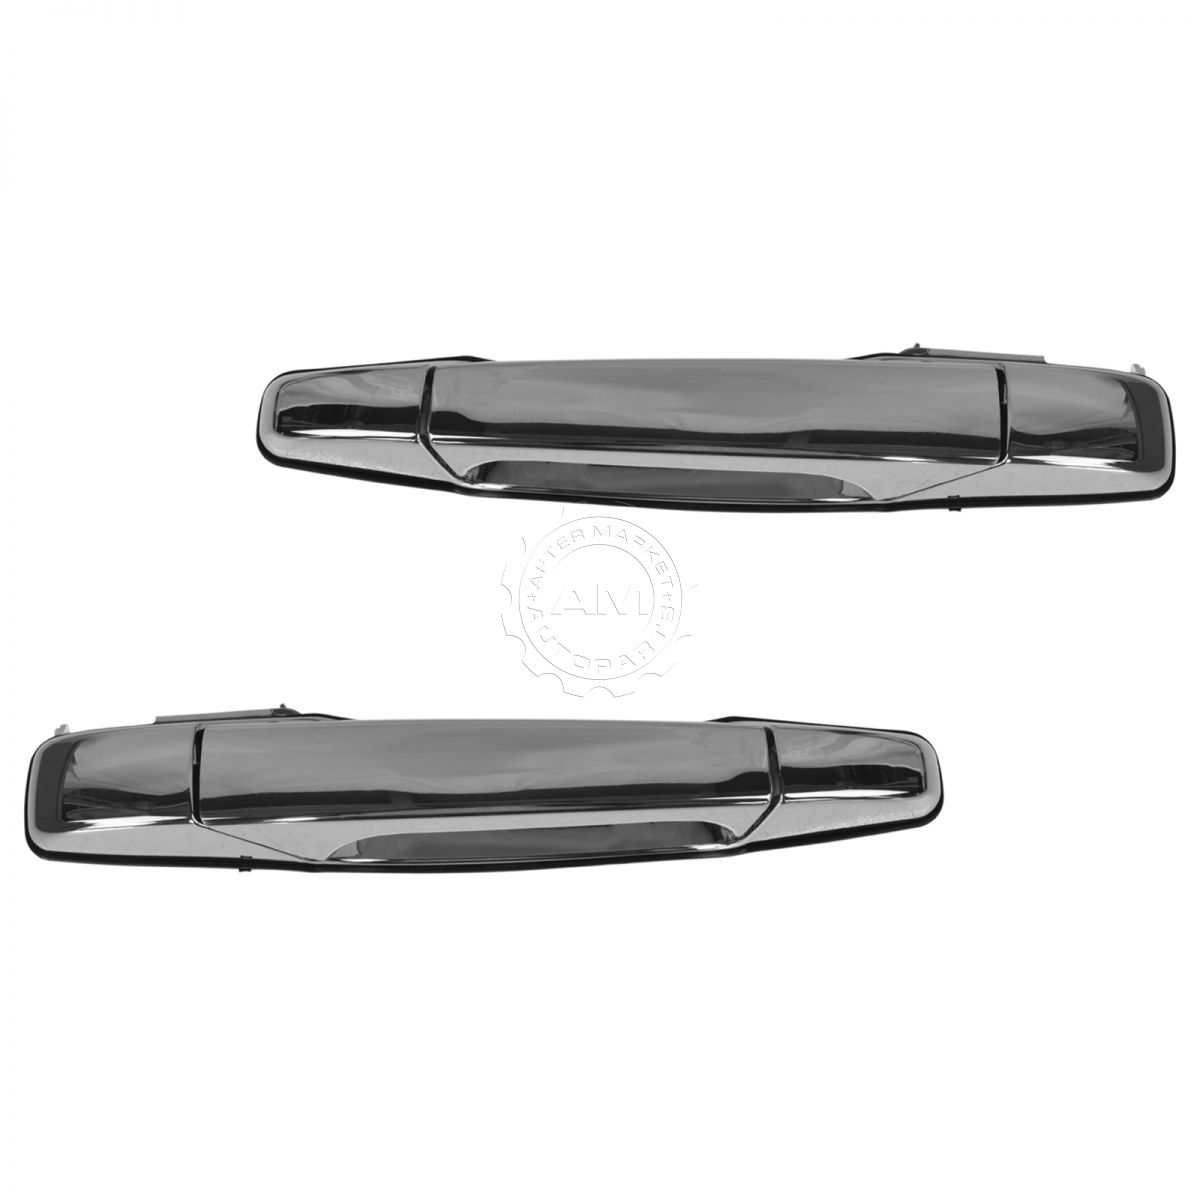 For Chevy Escalade Silverado GMC 07-13 Front Rear Inner Chrome Door Handles PAIR